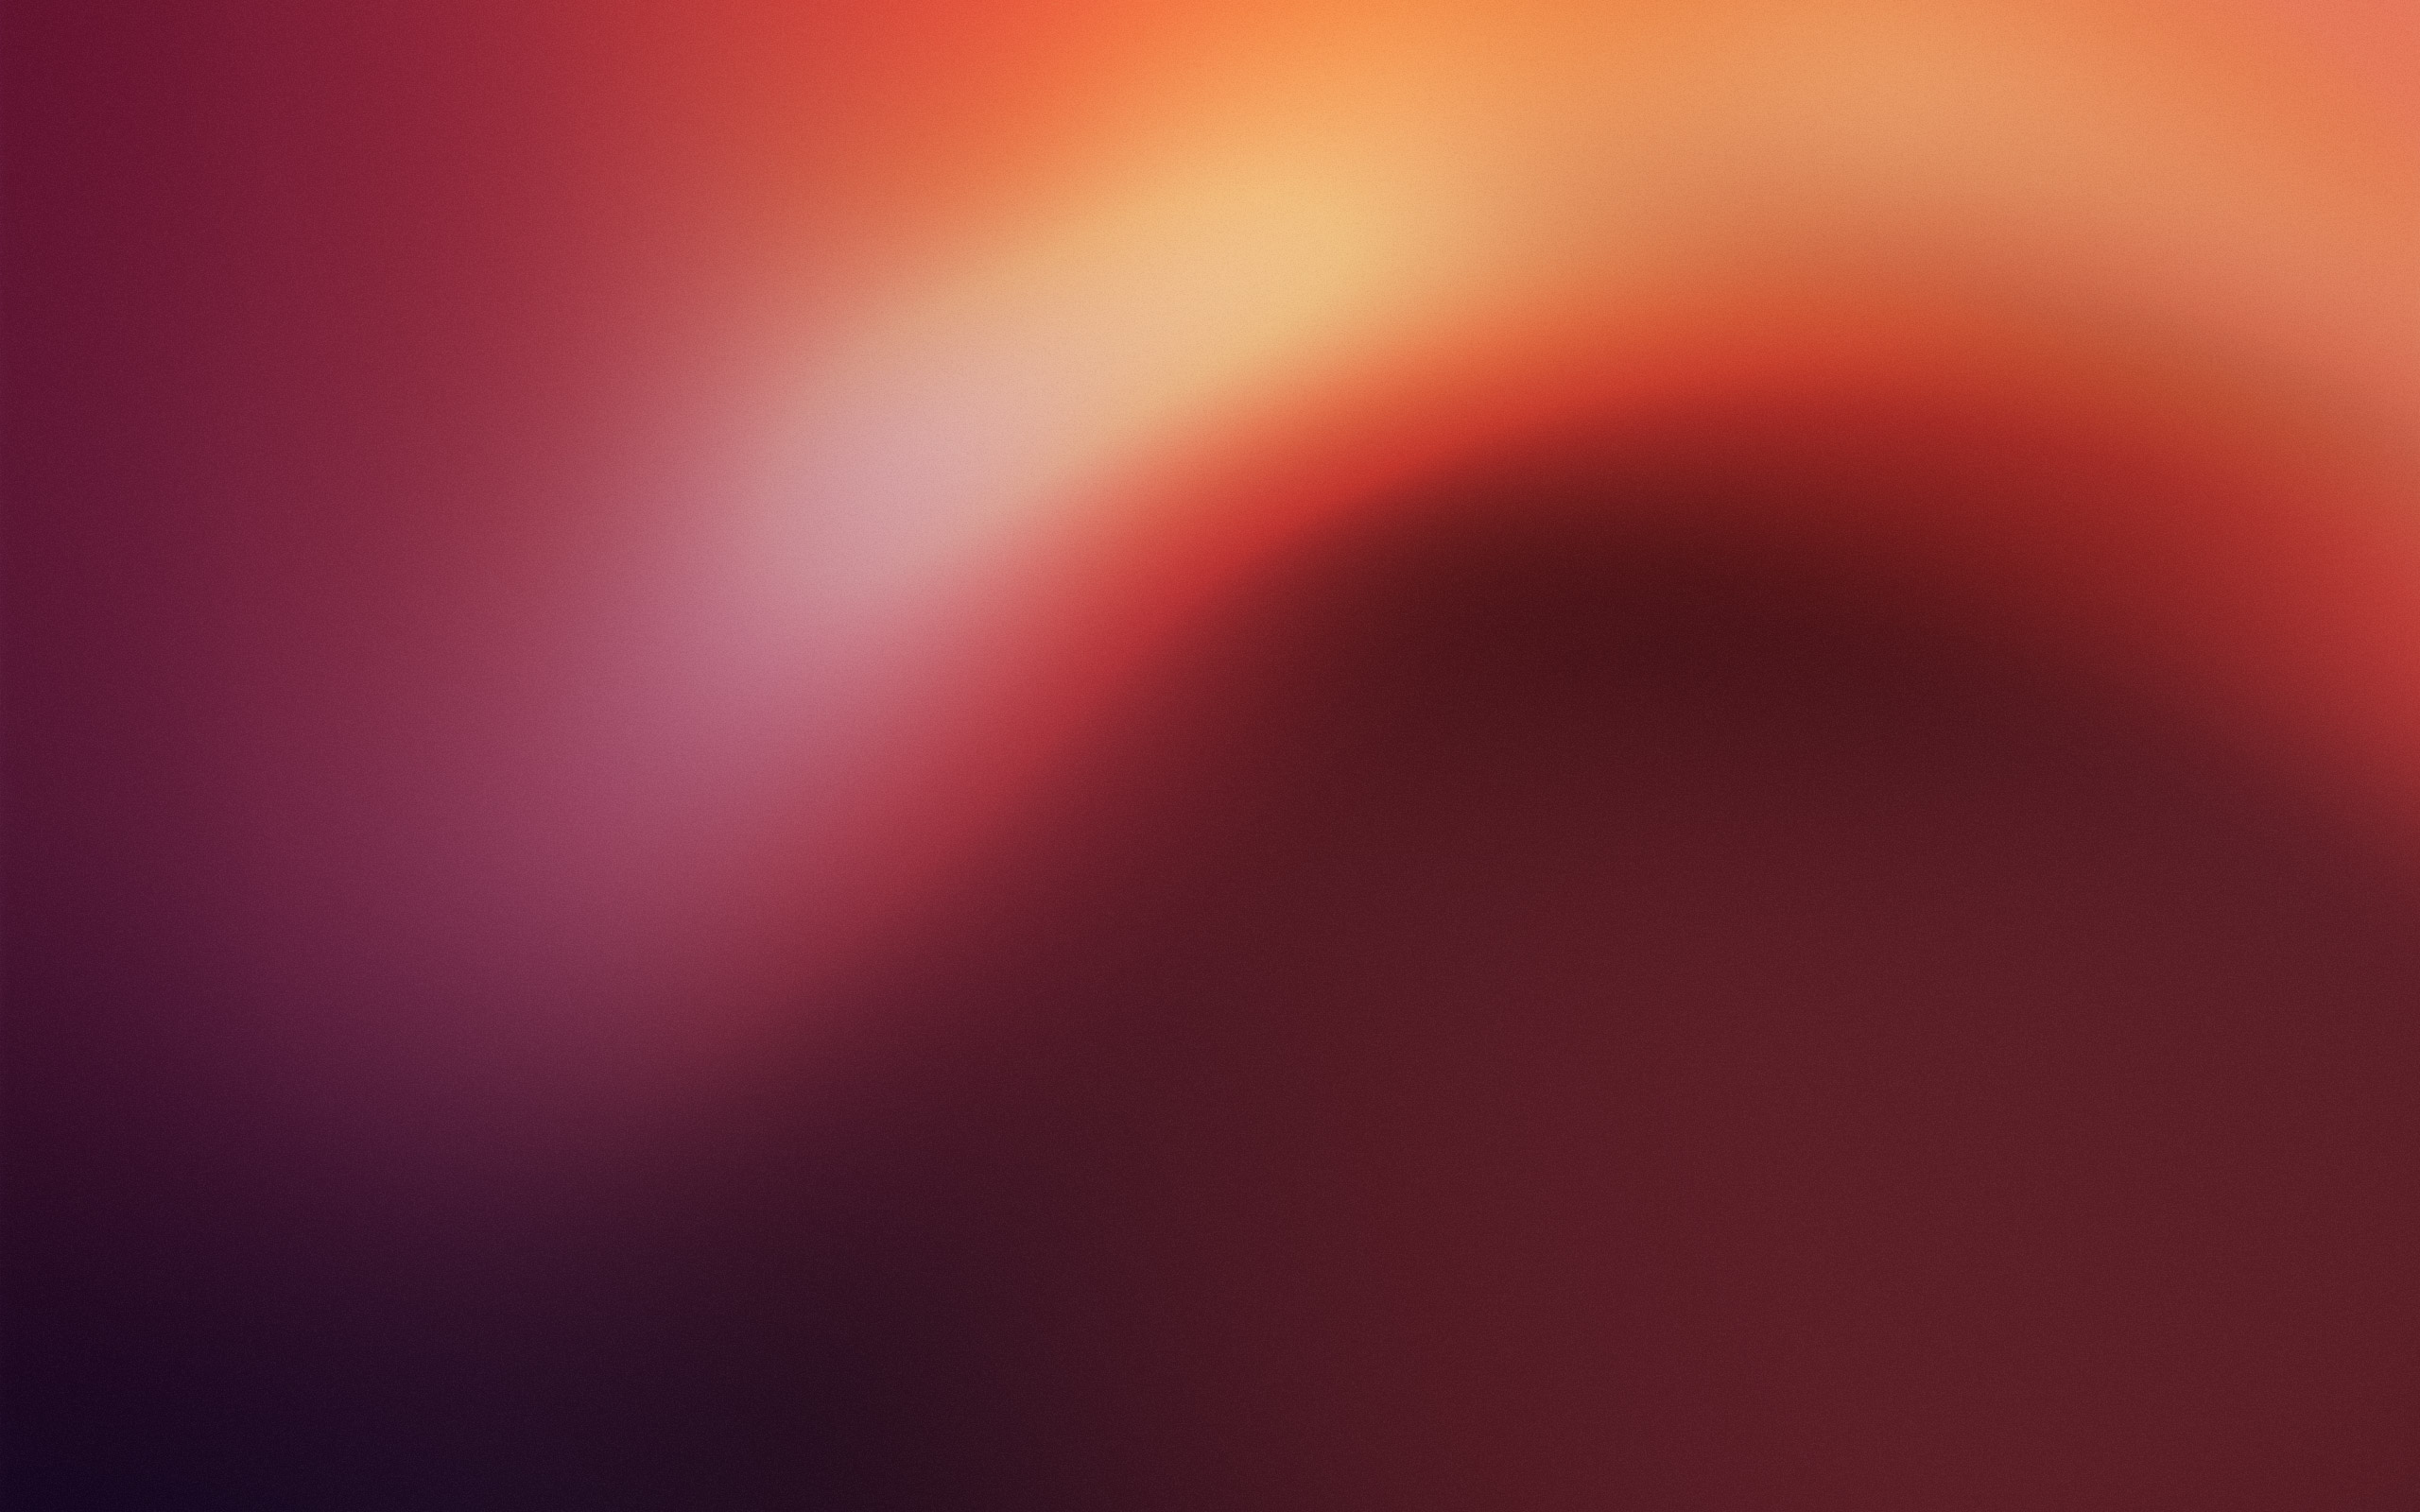 ubuntuの壁紙,赤,空,オレンジ,ピンク,光